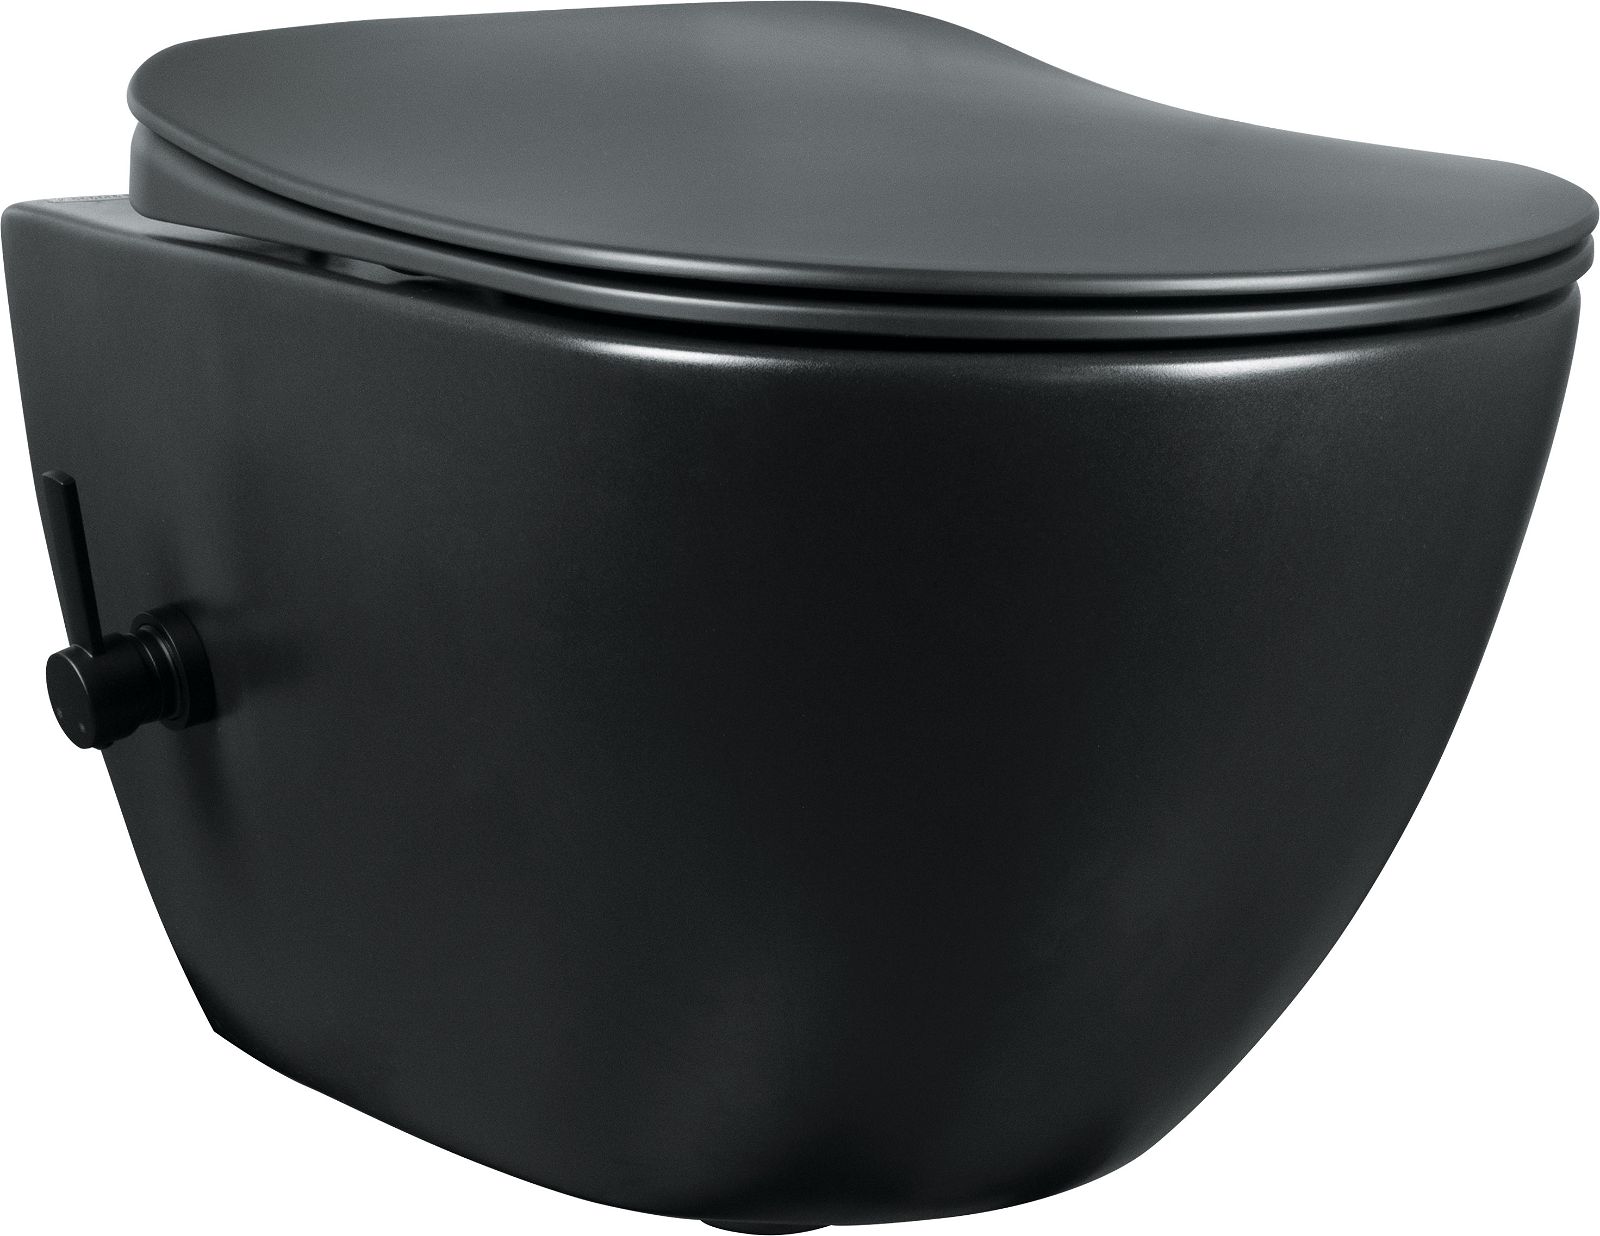 Toilet bowl, with bidet function - with mixer tap - CBP_NWPW - Główne zdjęcie produktowe